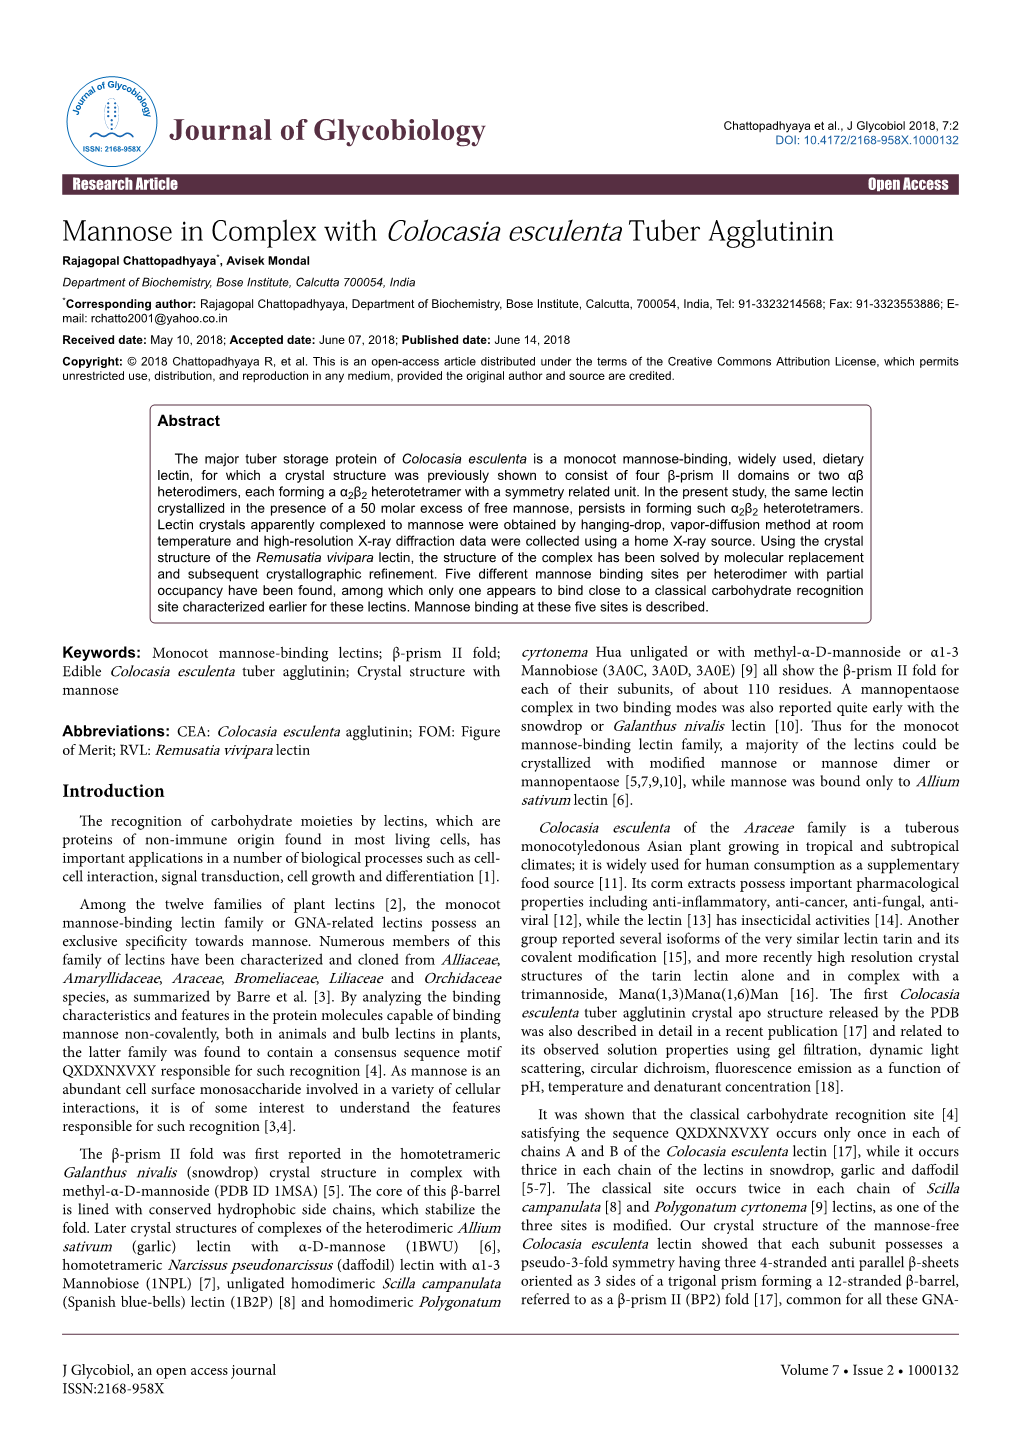 Mannose in Complex with Colocasia Esculenta Tuber Agglutinin